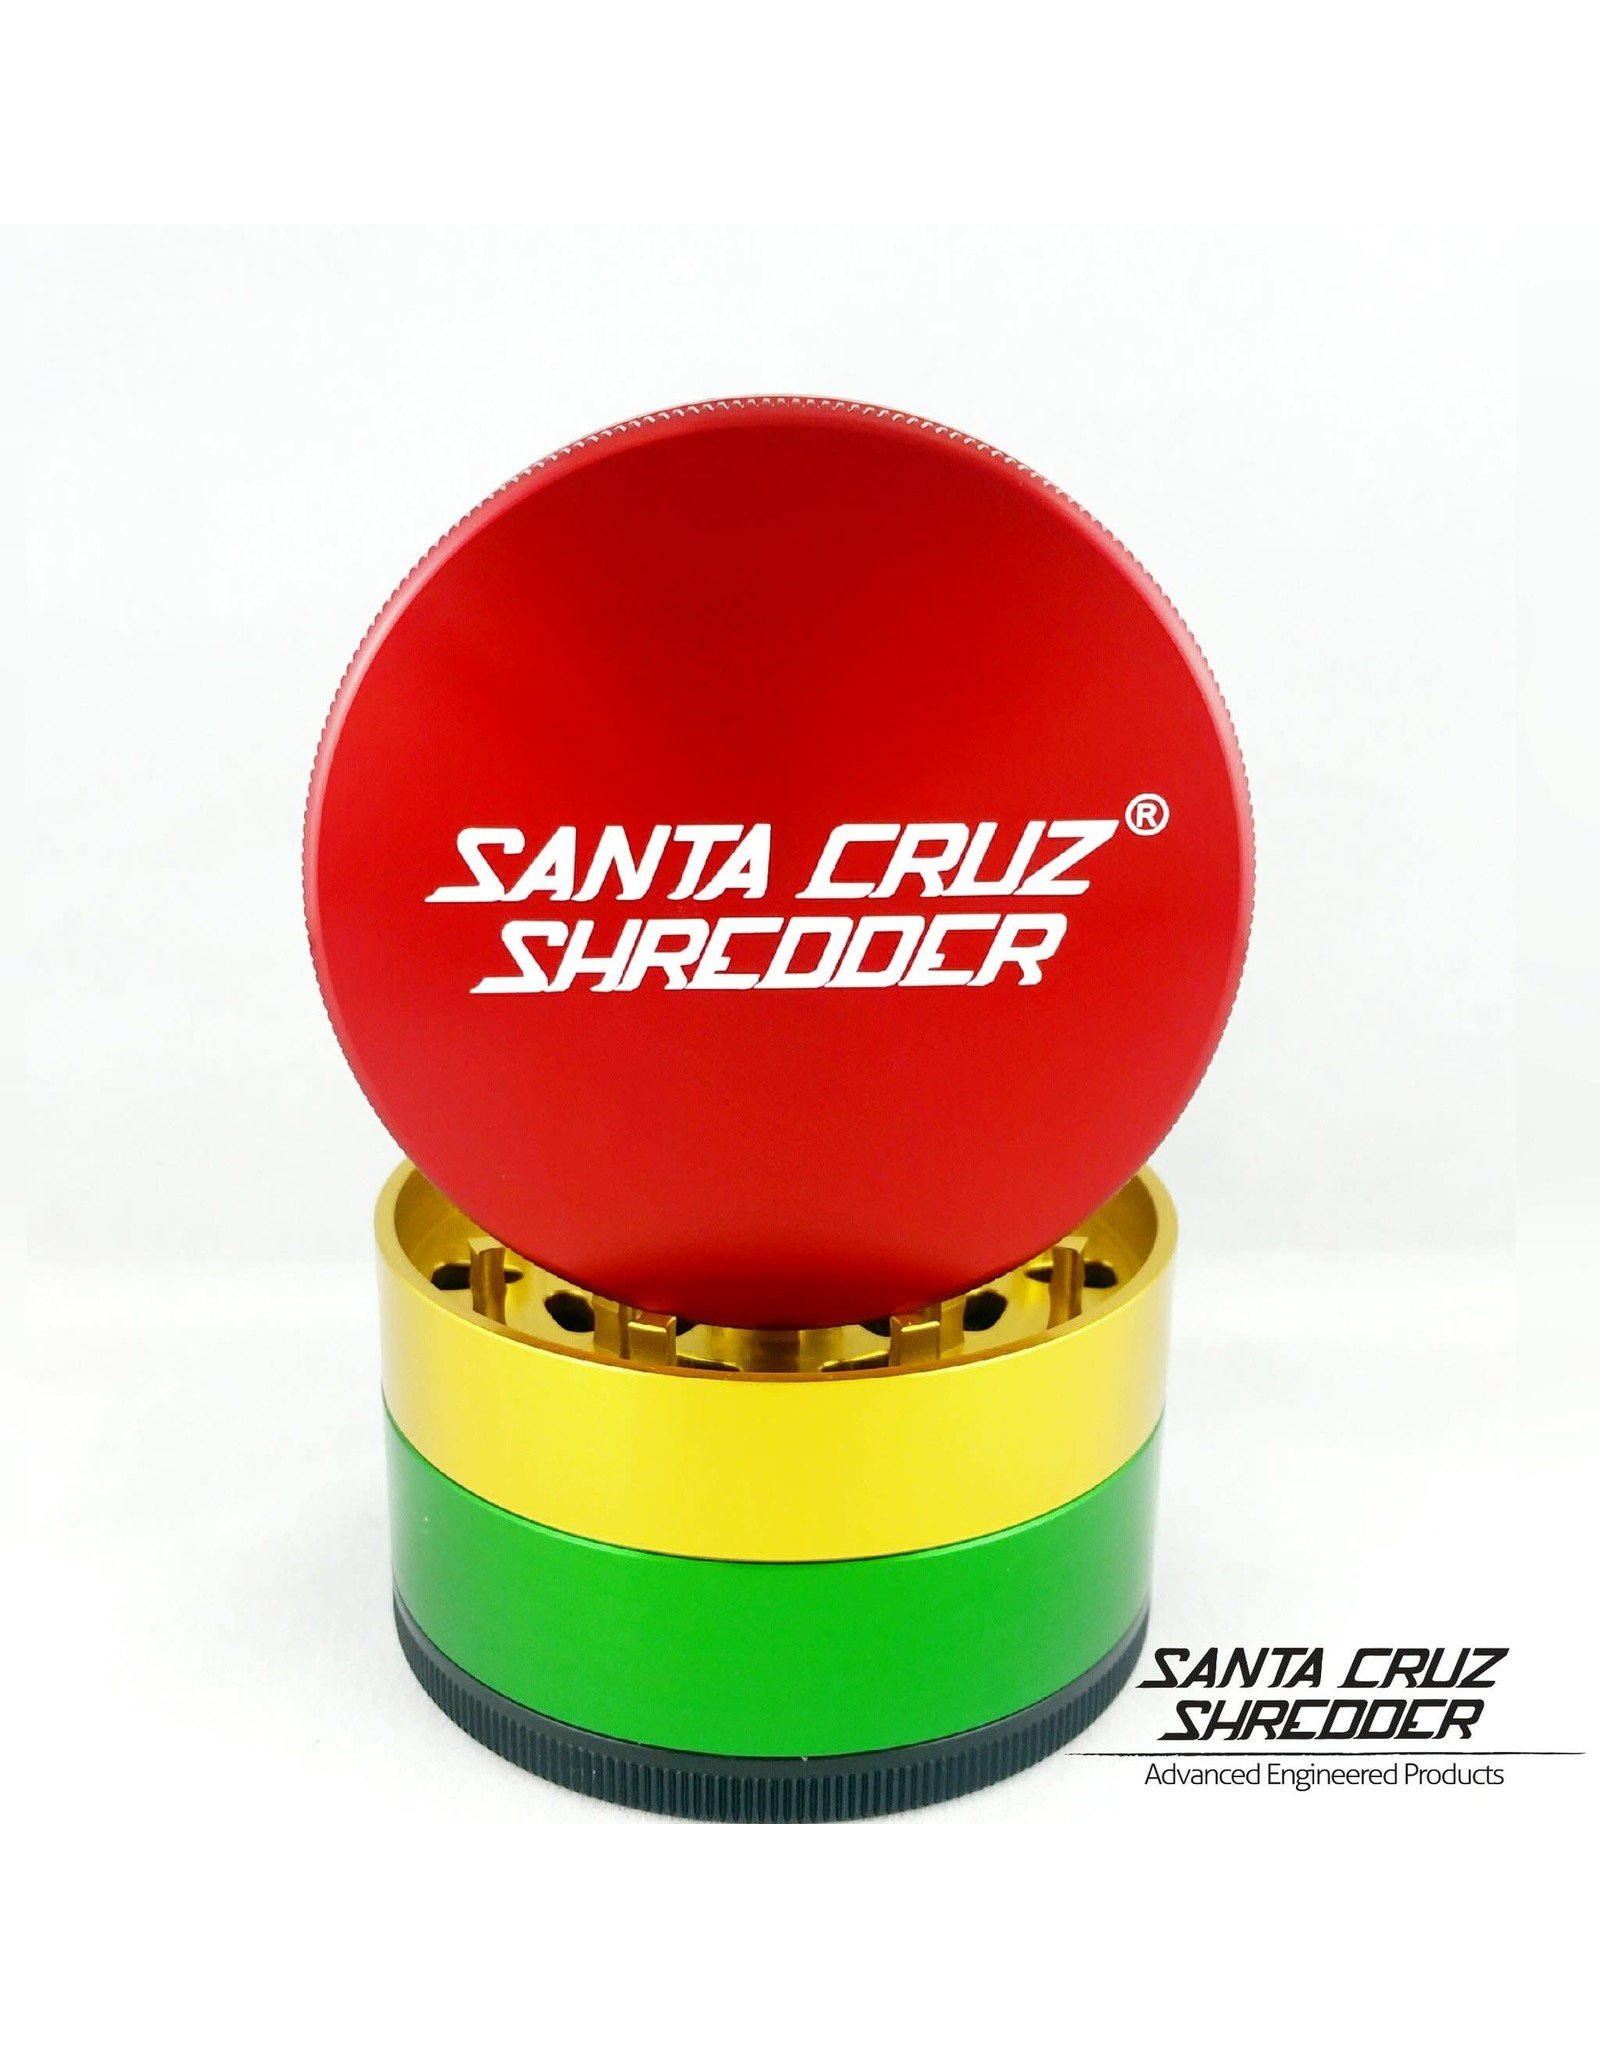 Santa Cruz Shredder Santa Cruz Shredder Large 4Pc Rasta